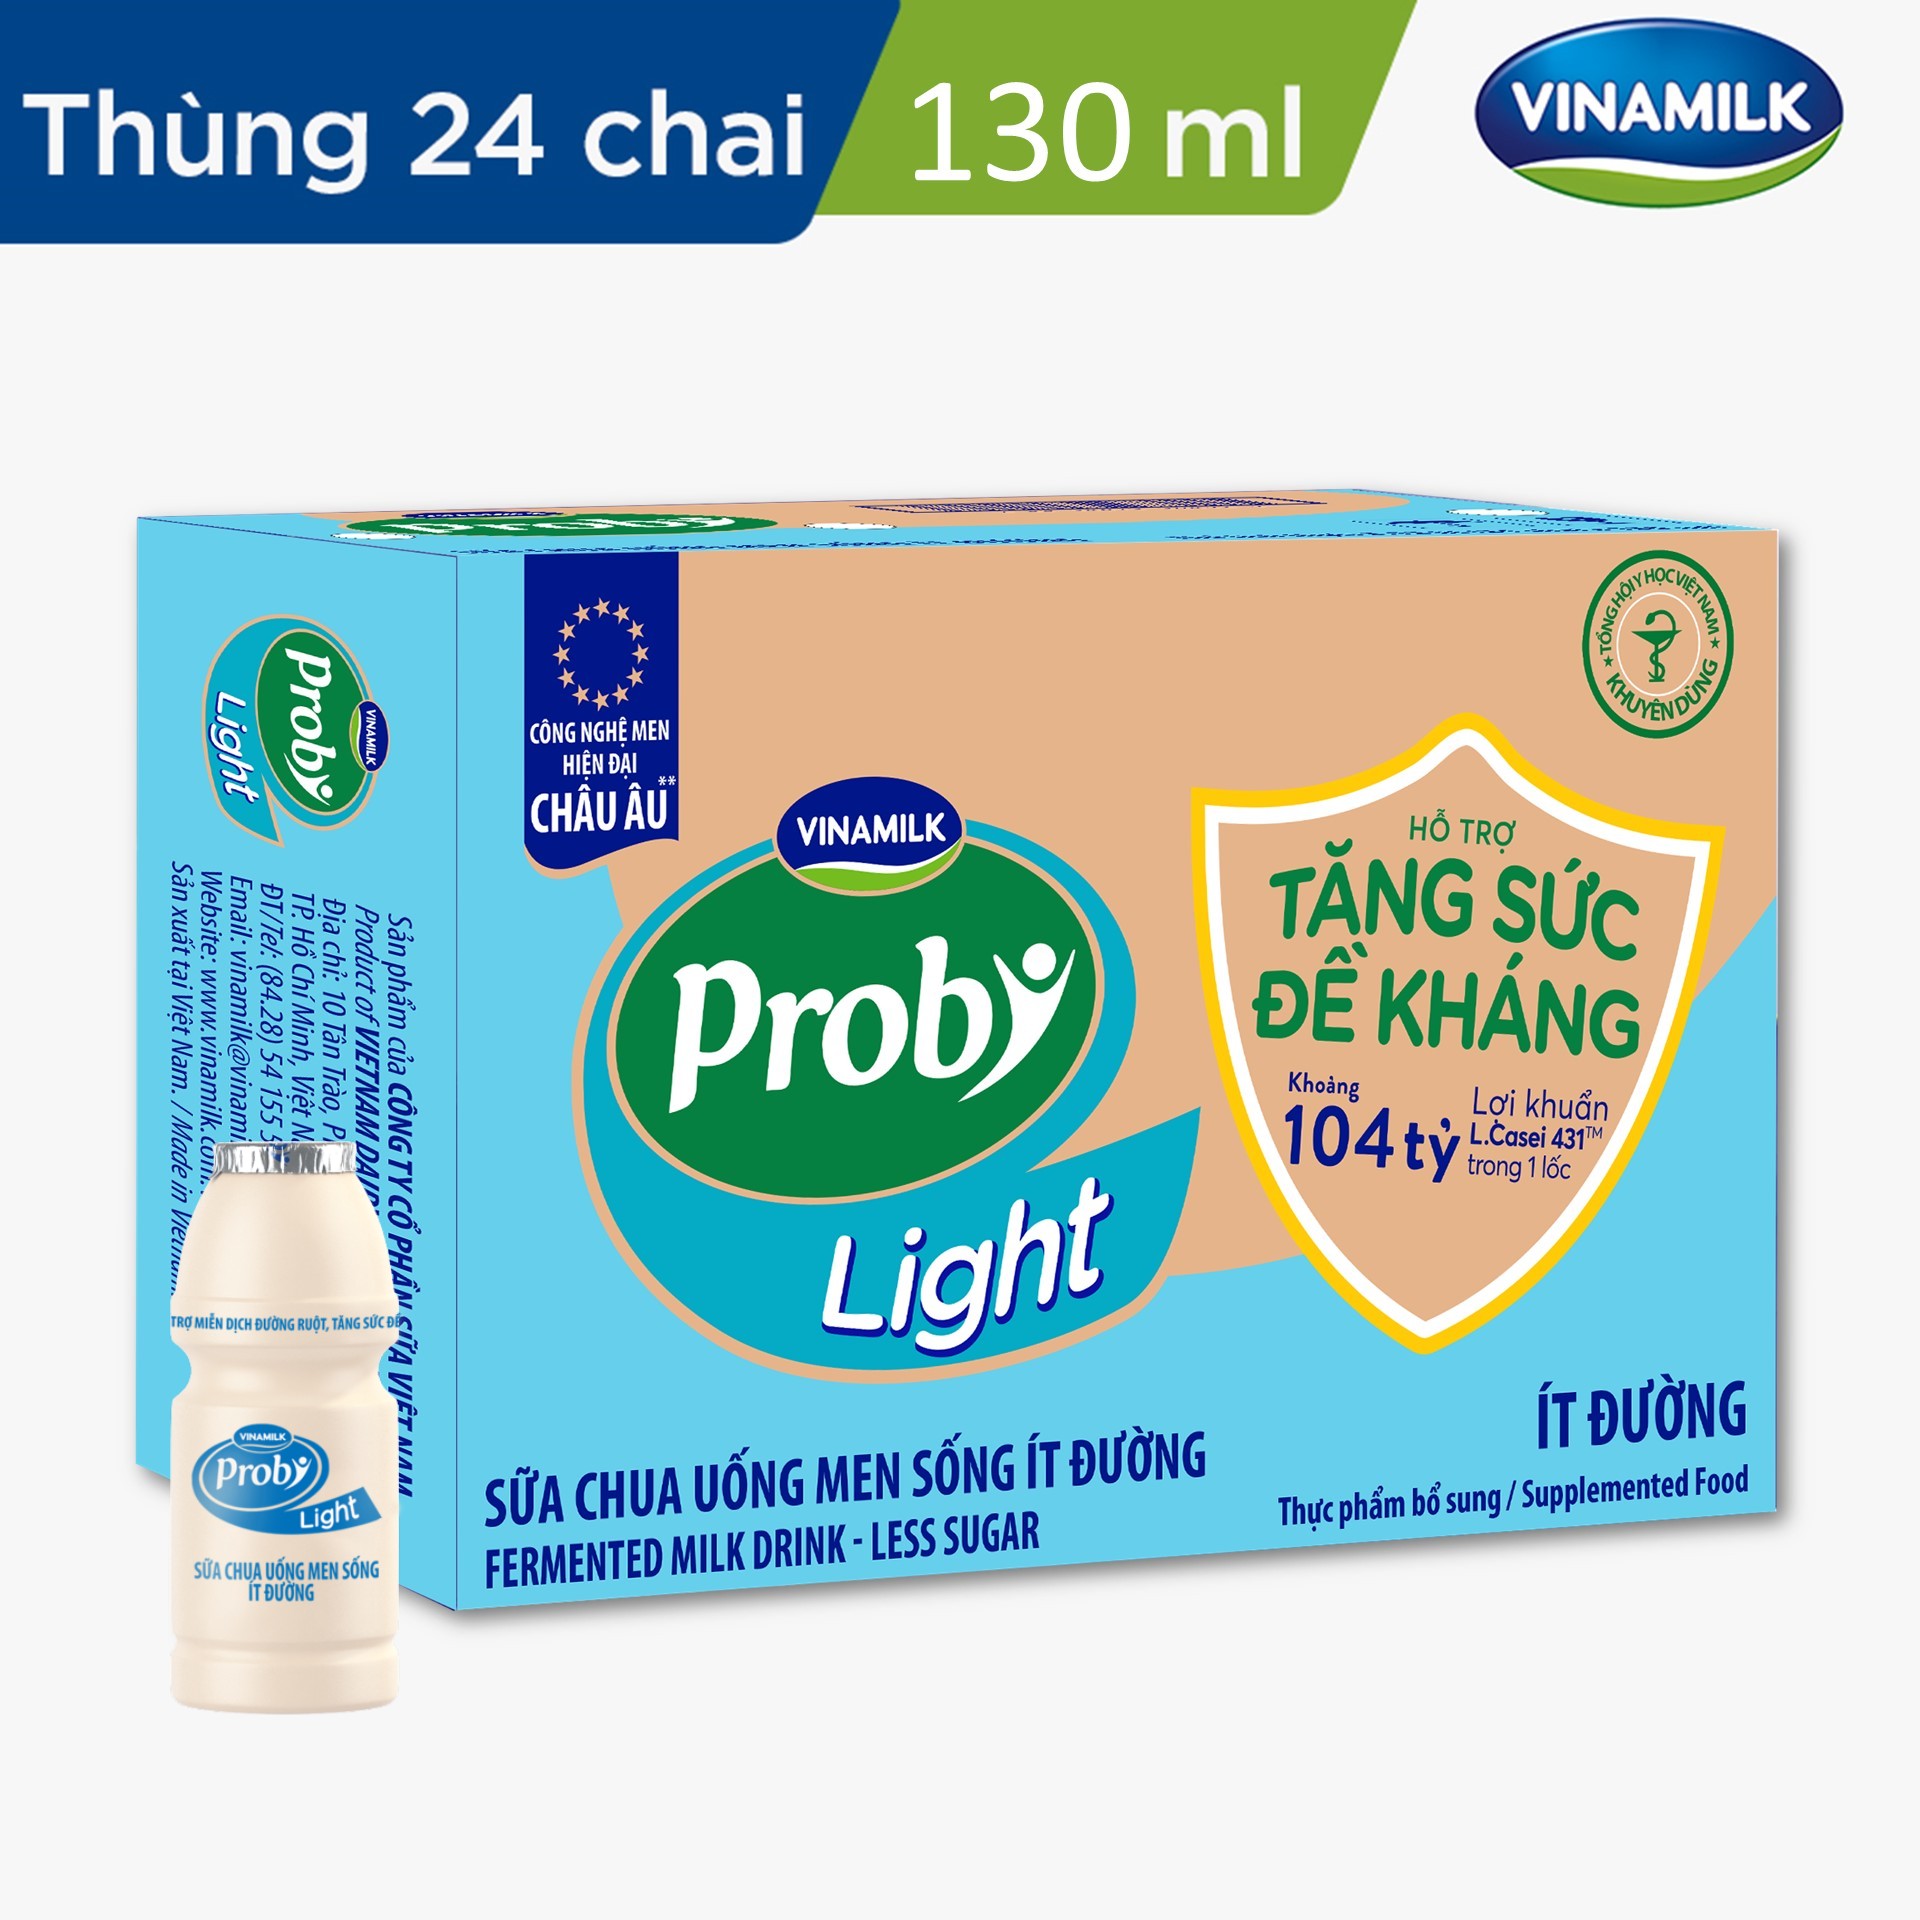 [Vinamilk] Thùng 24 Chai Sữa Chua Uống Probi Ít Đường - 130ml/chai